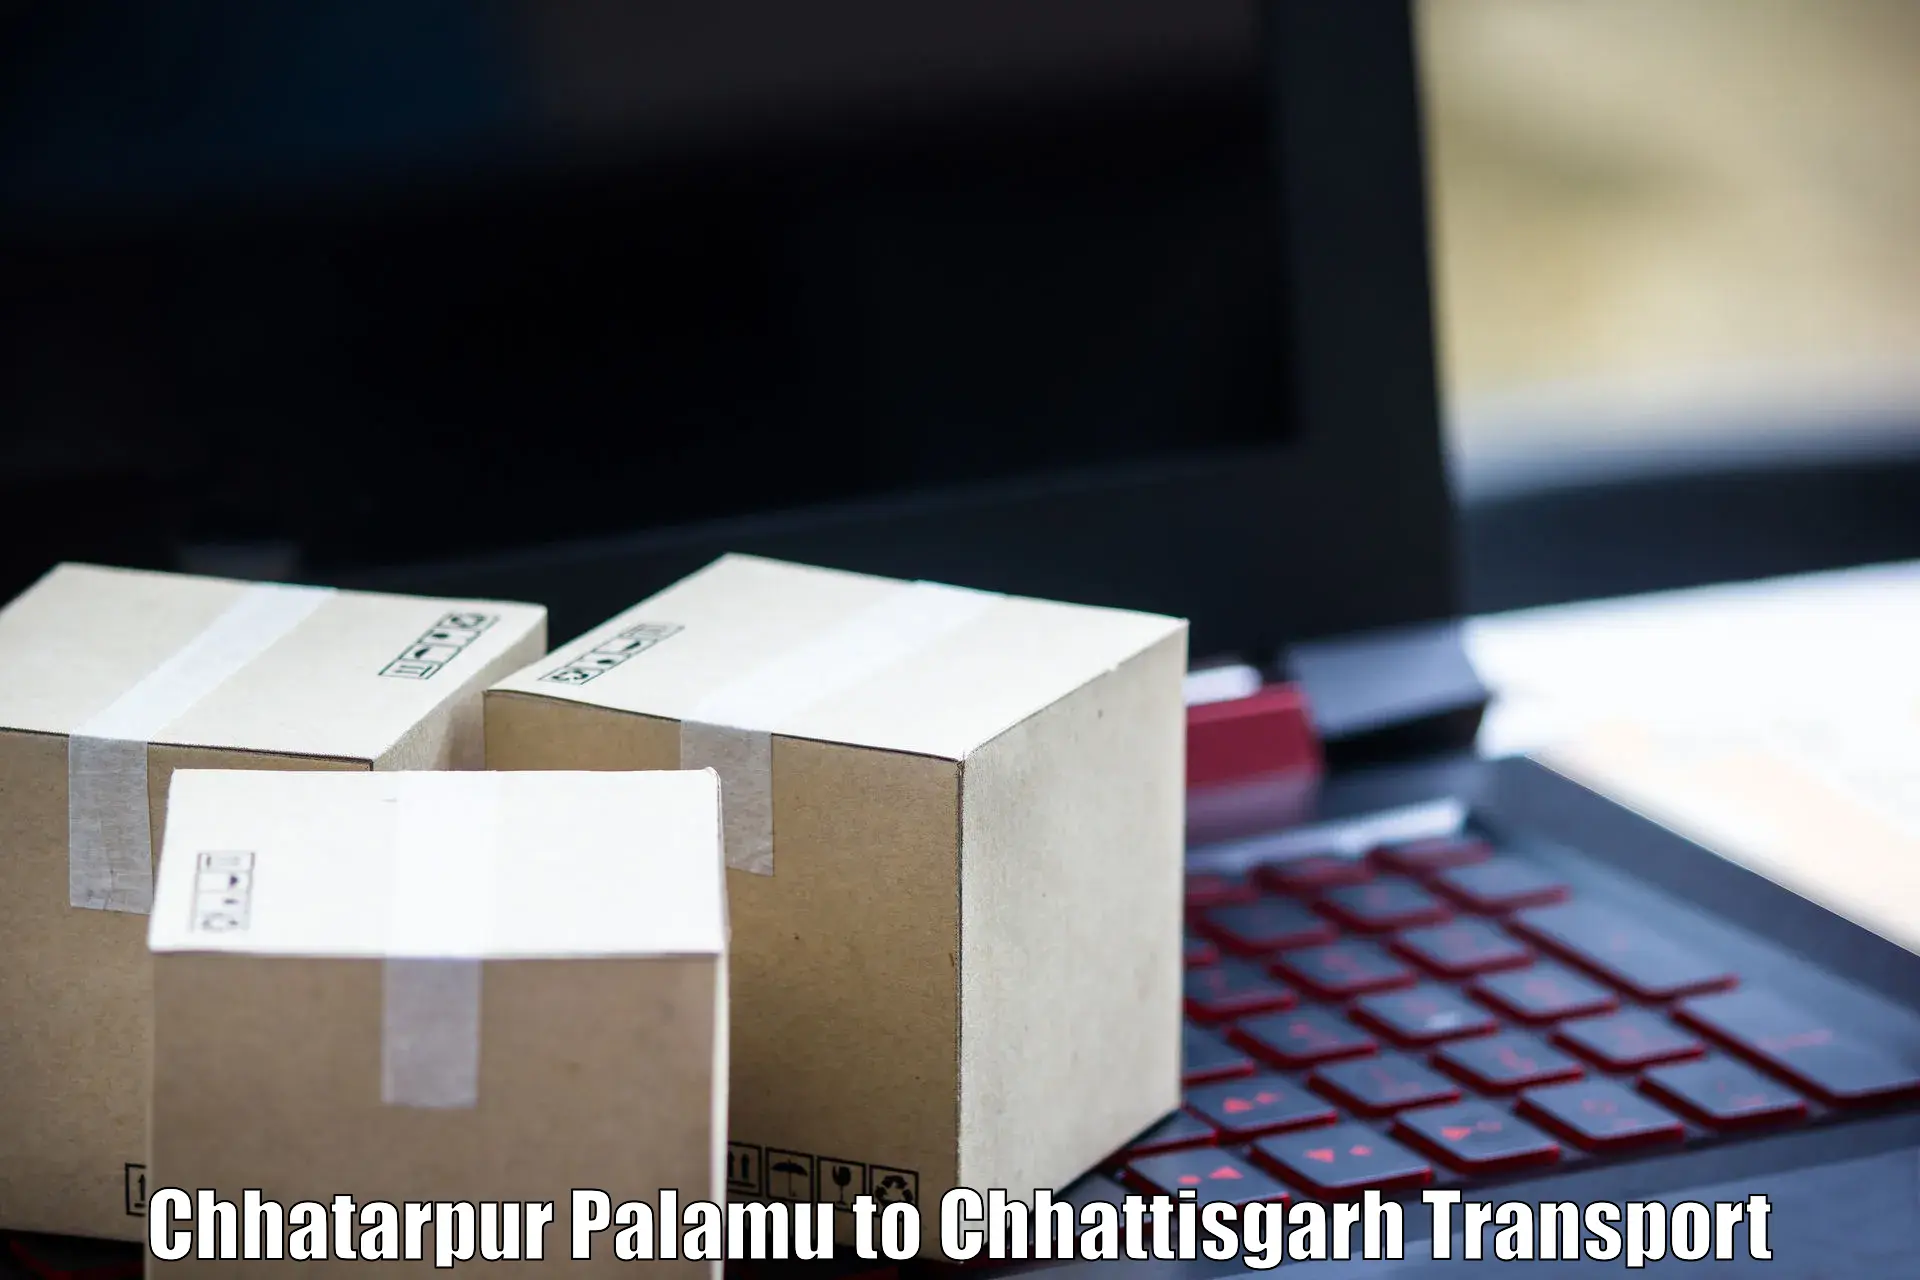 Cargo train transport services Chhatarpur Palamu to Jaijaipur